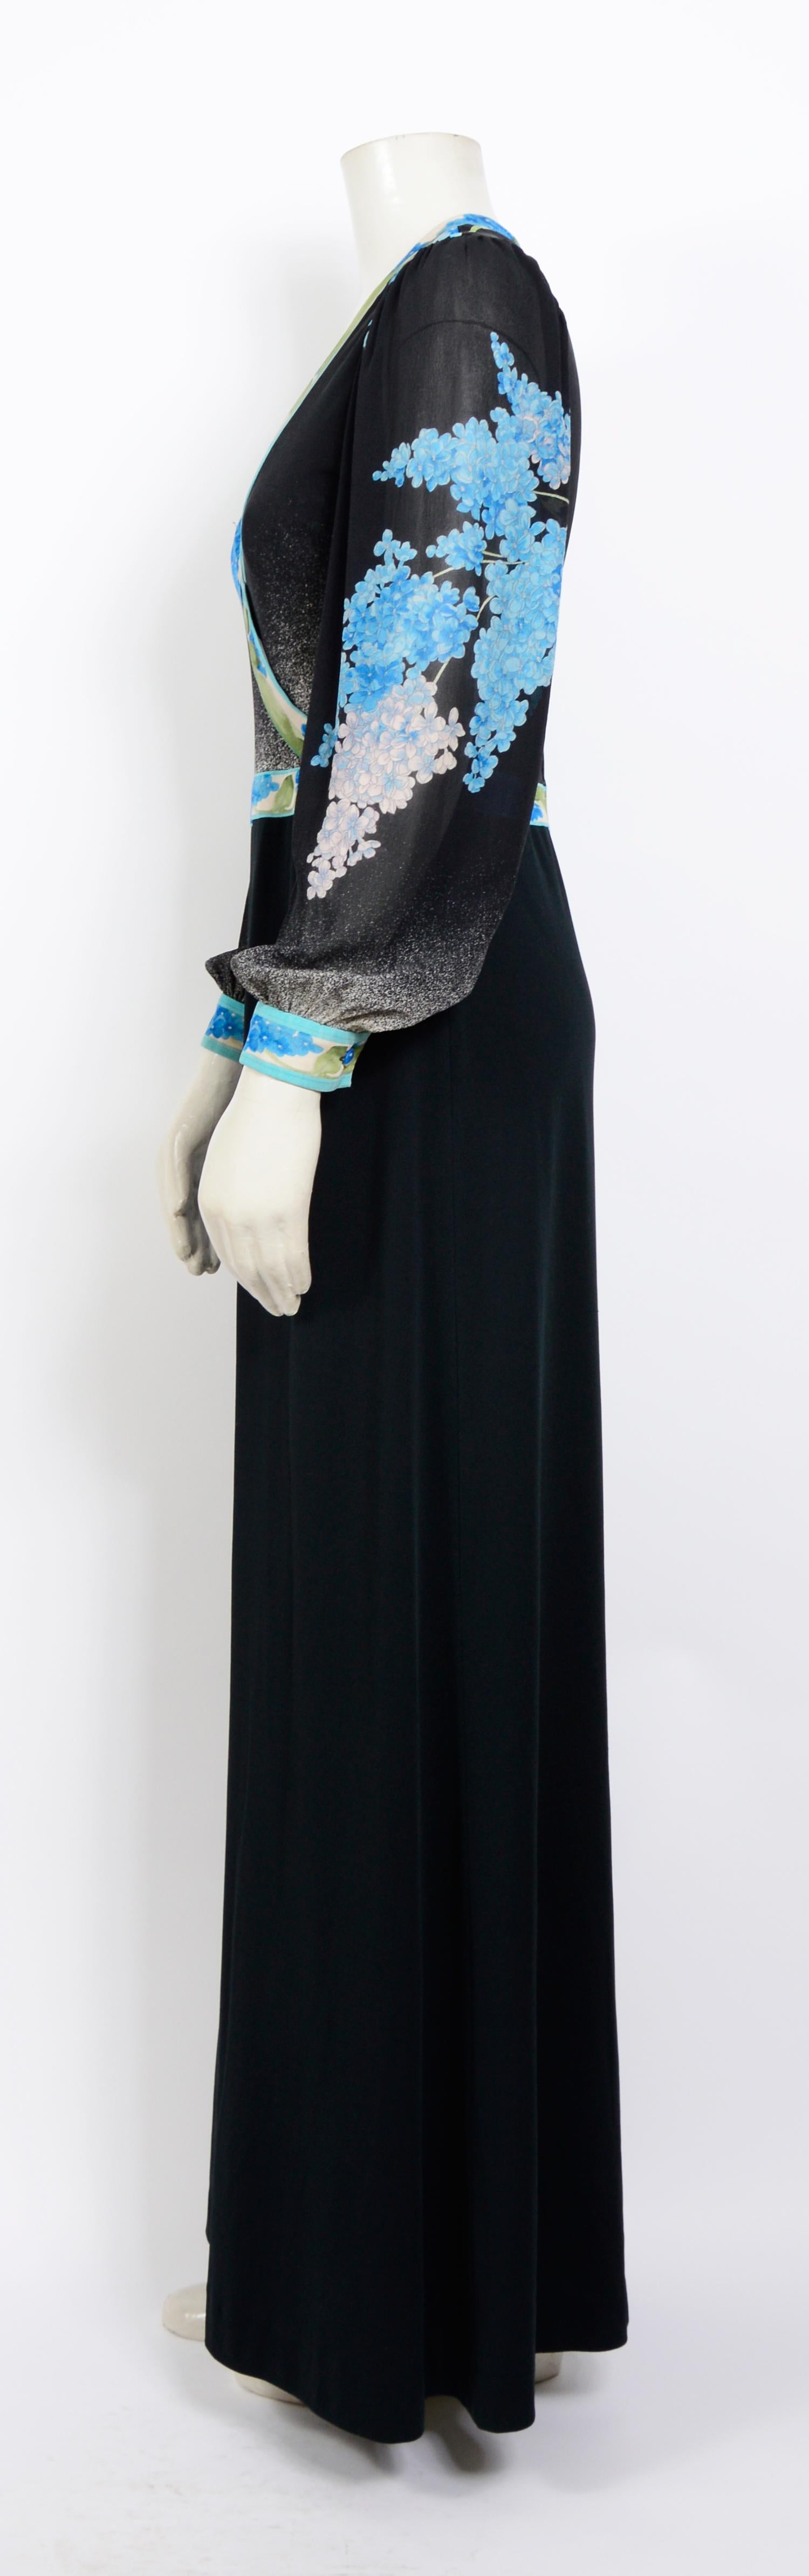 Black Leonard vintage 1970s signed bleu flower top 100% black silk jersey maxi dress For Sale